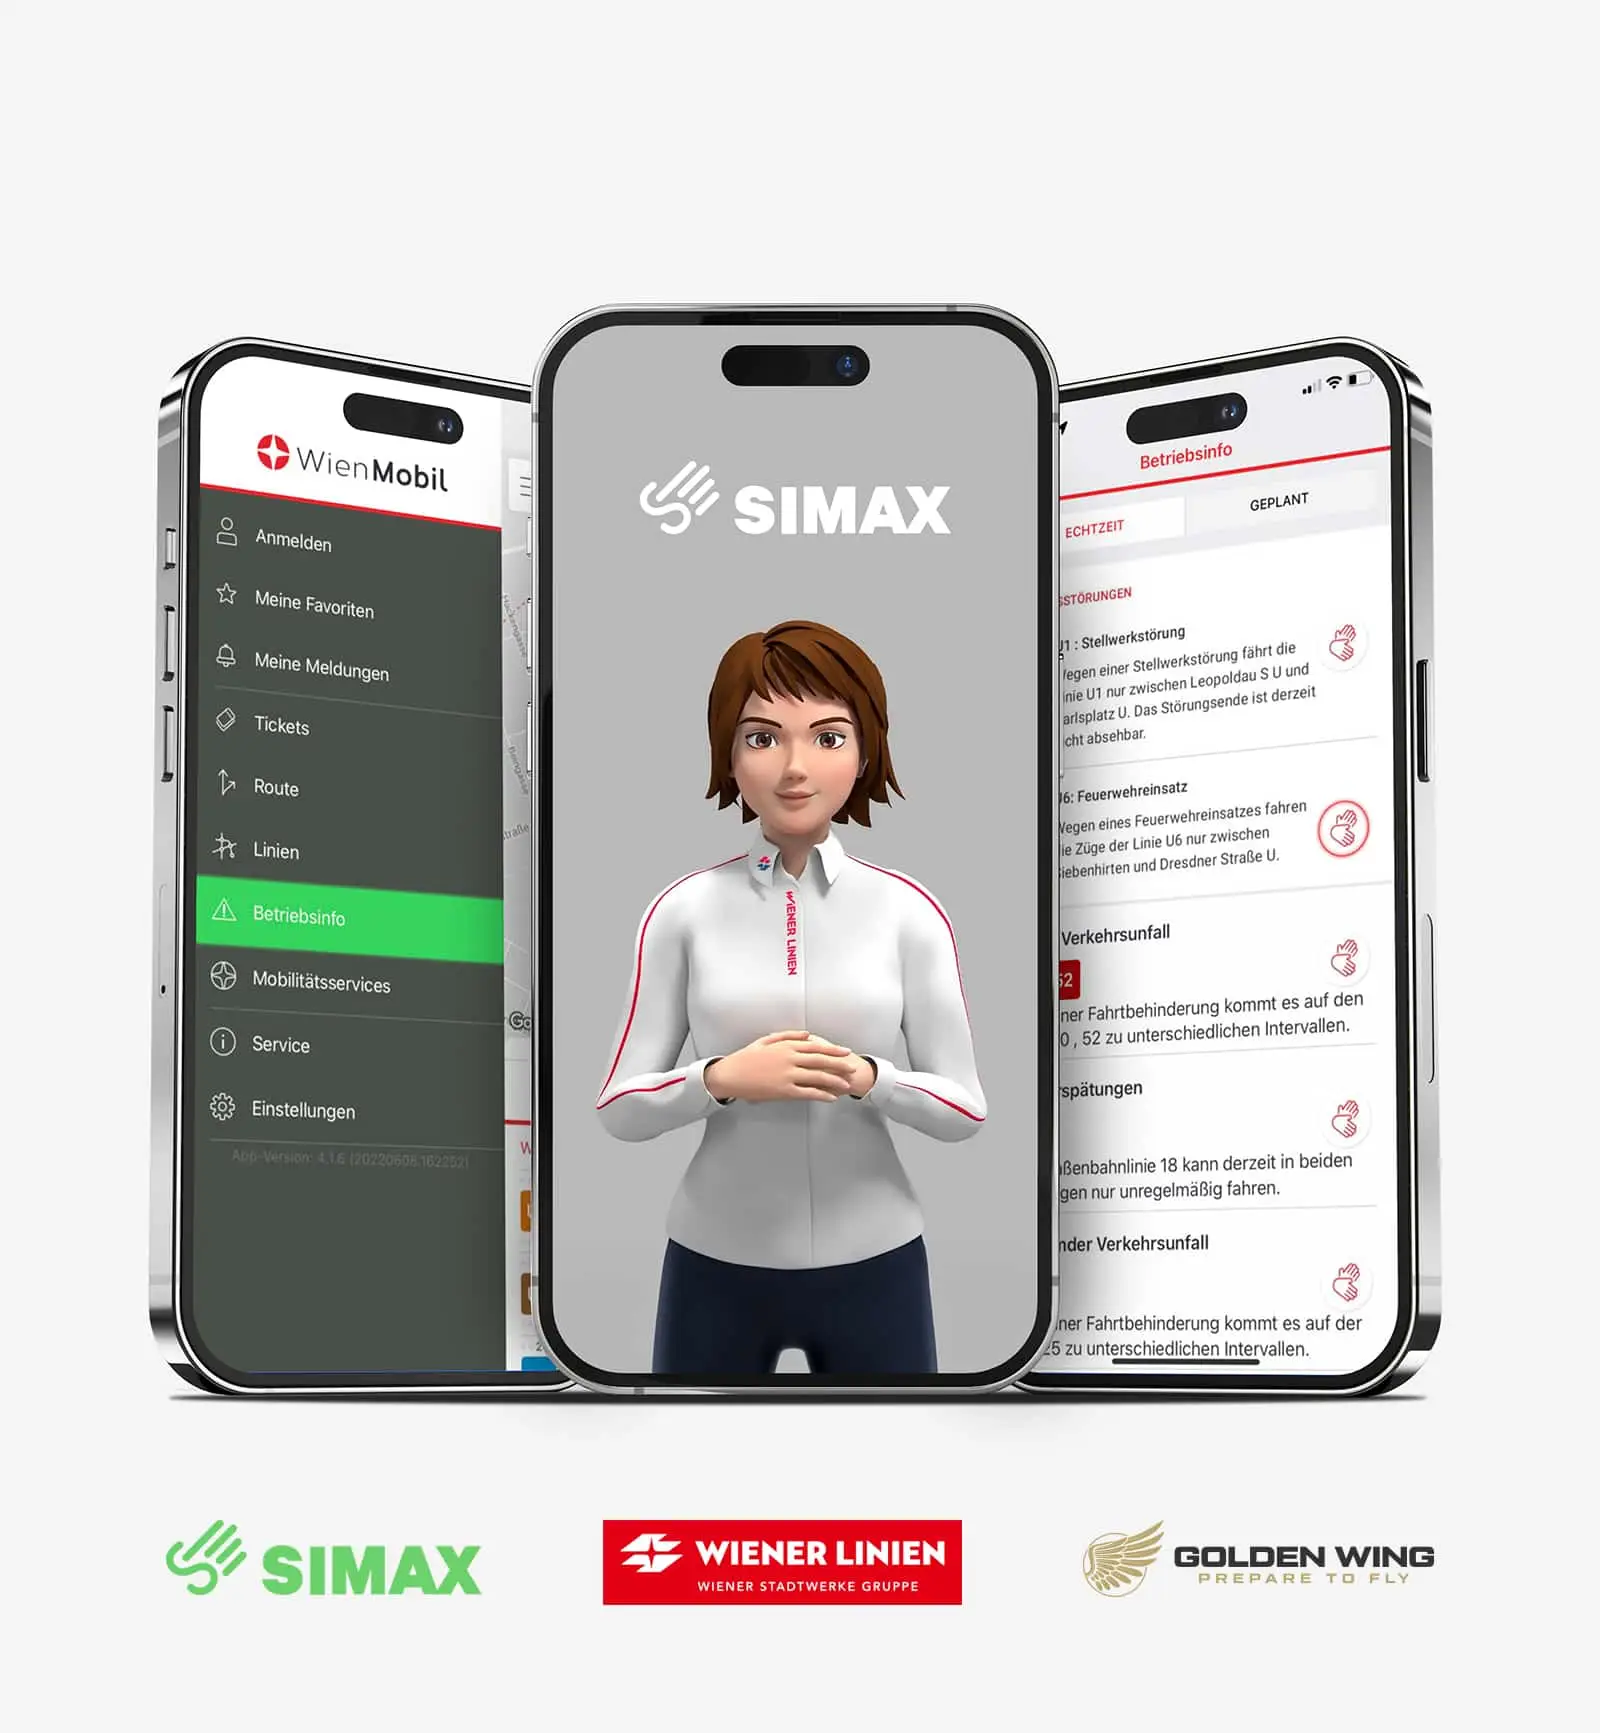 Drei Smartphones zeigen die Integration der SiMAX App in die Wiener Mobil App, um Text in Gebärdensprache zu übersetzen, gesponsert von Golden Wing.